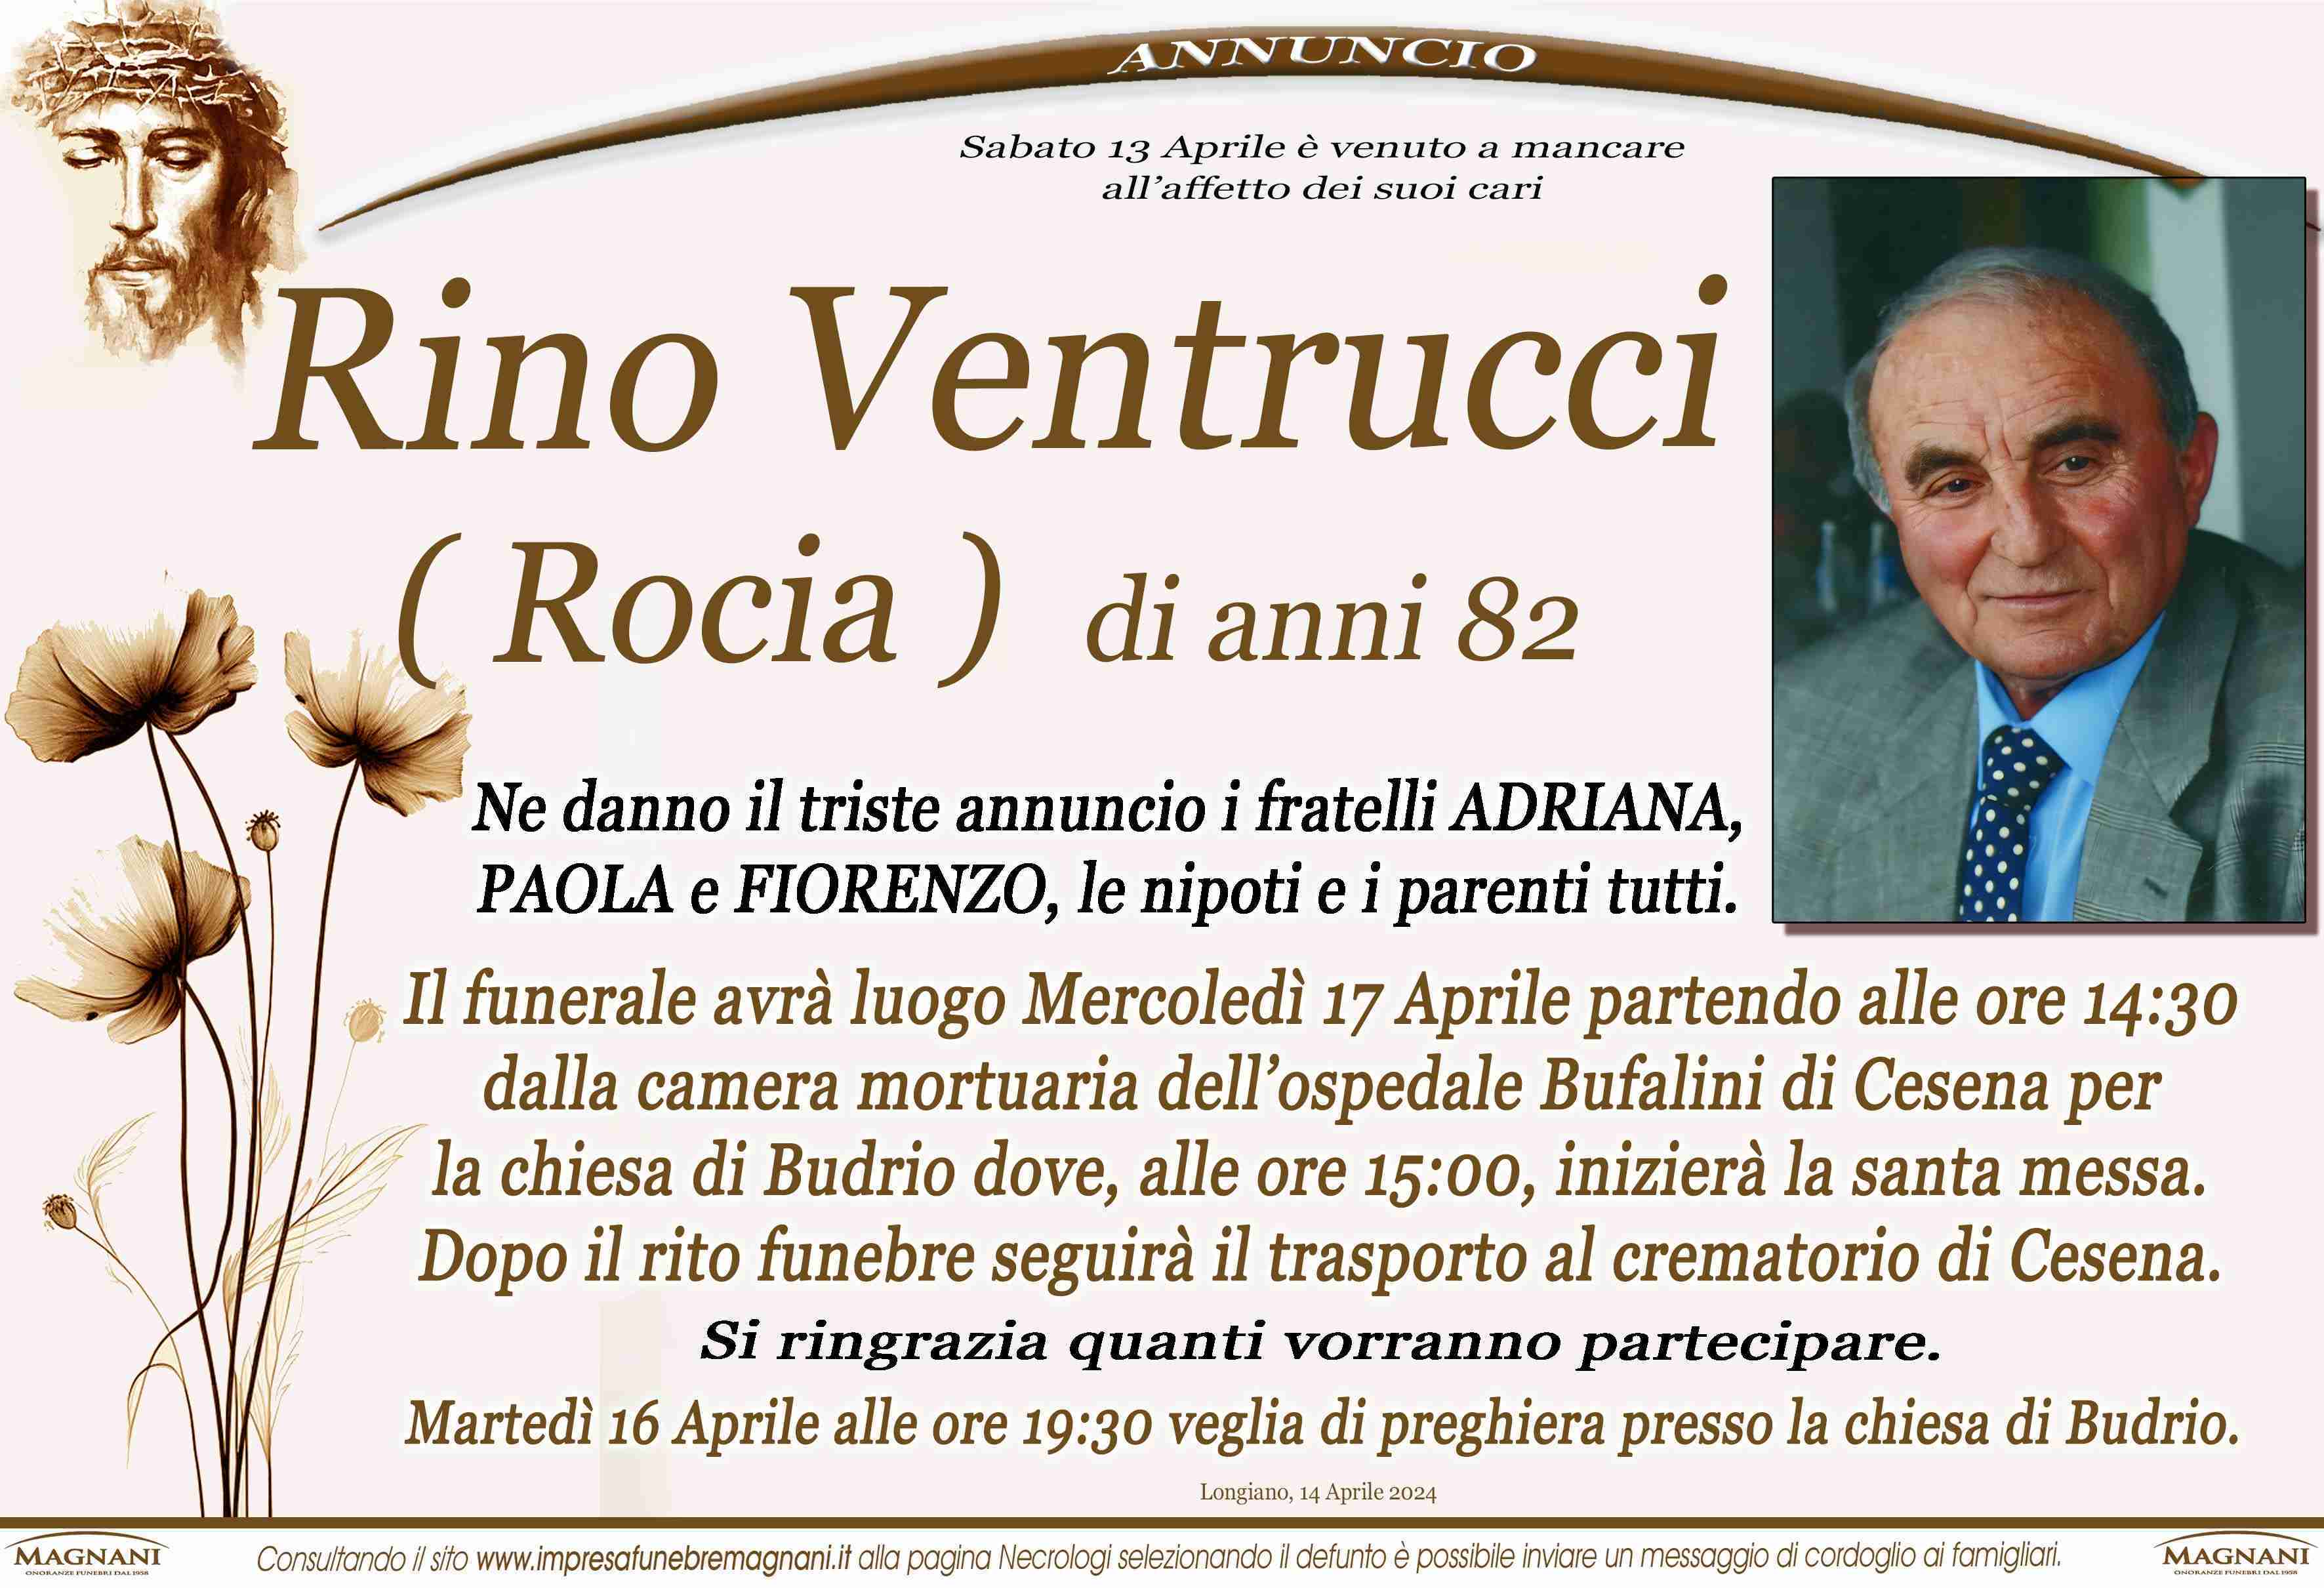 Rino Ventrucci